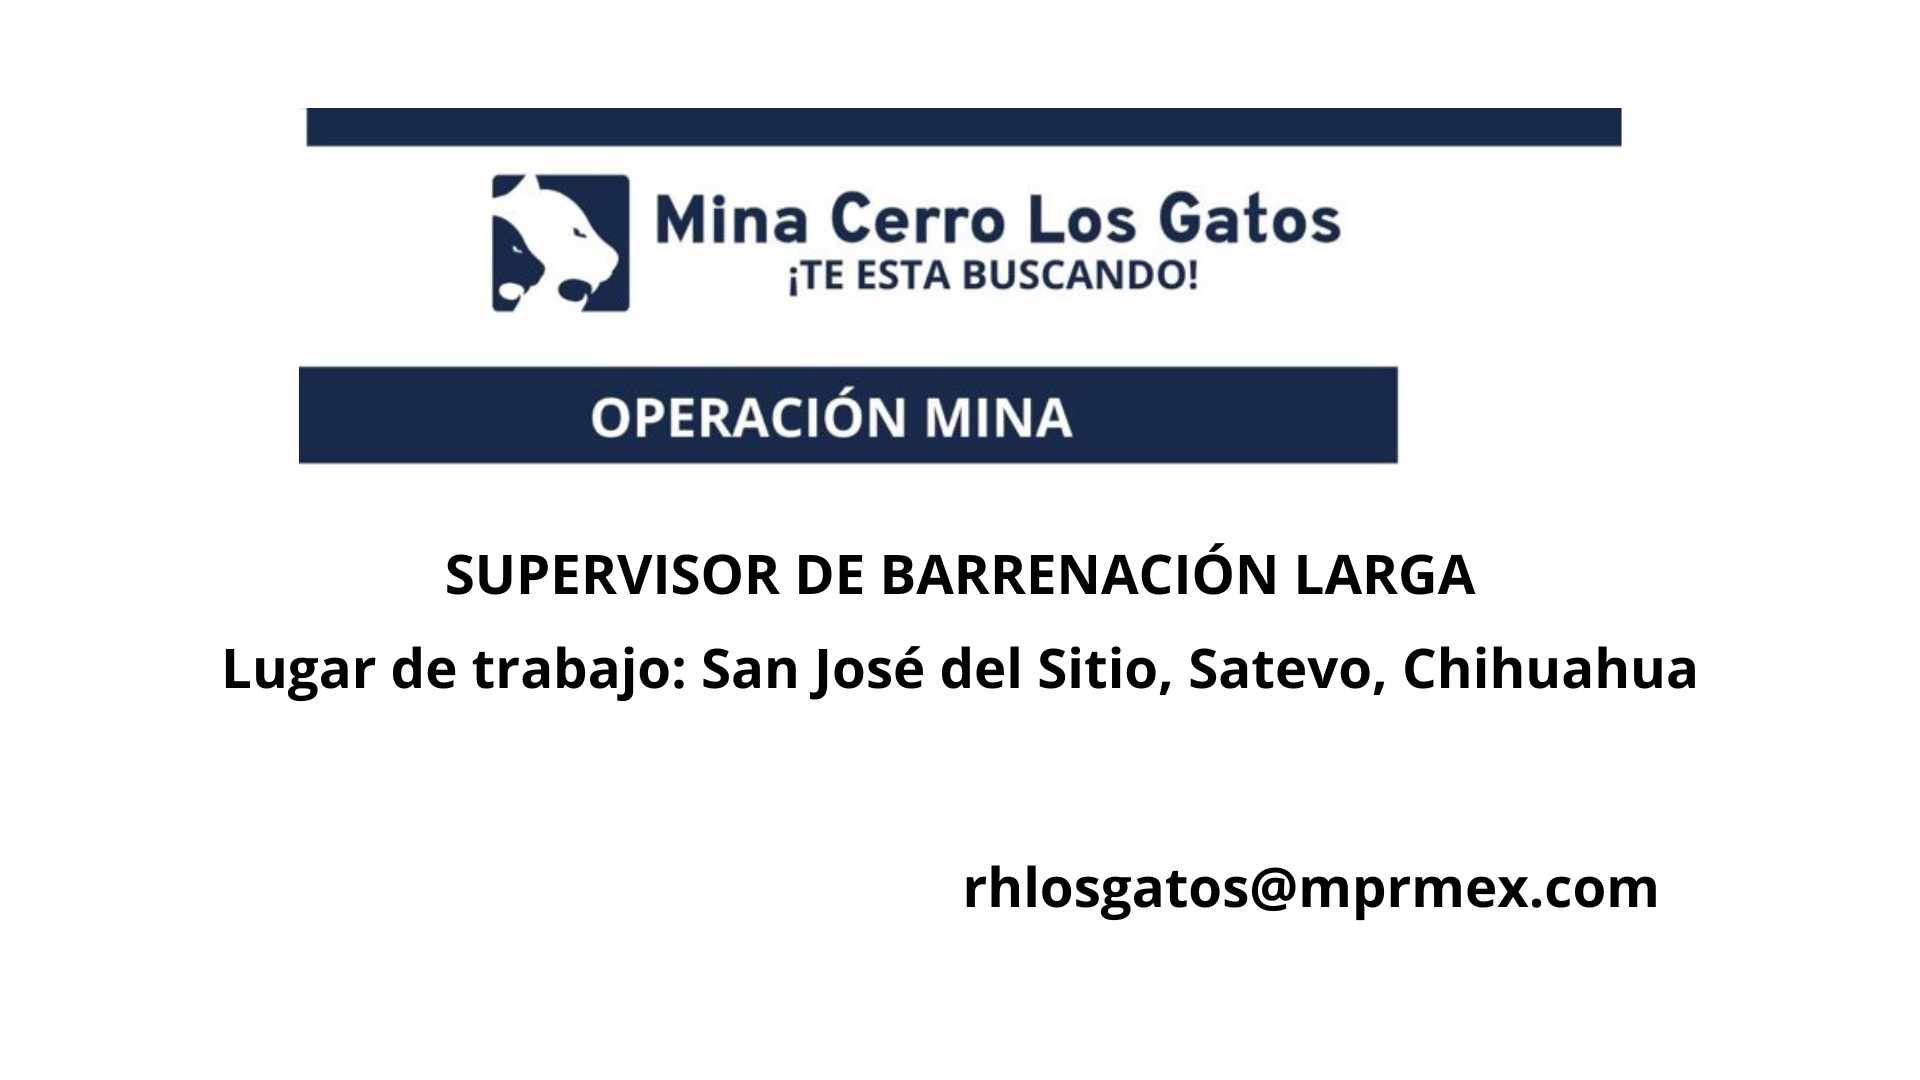 Oportunidad laboral Mina Cerro Los Gatos